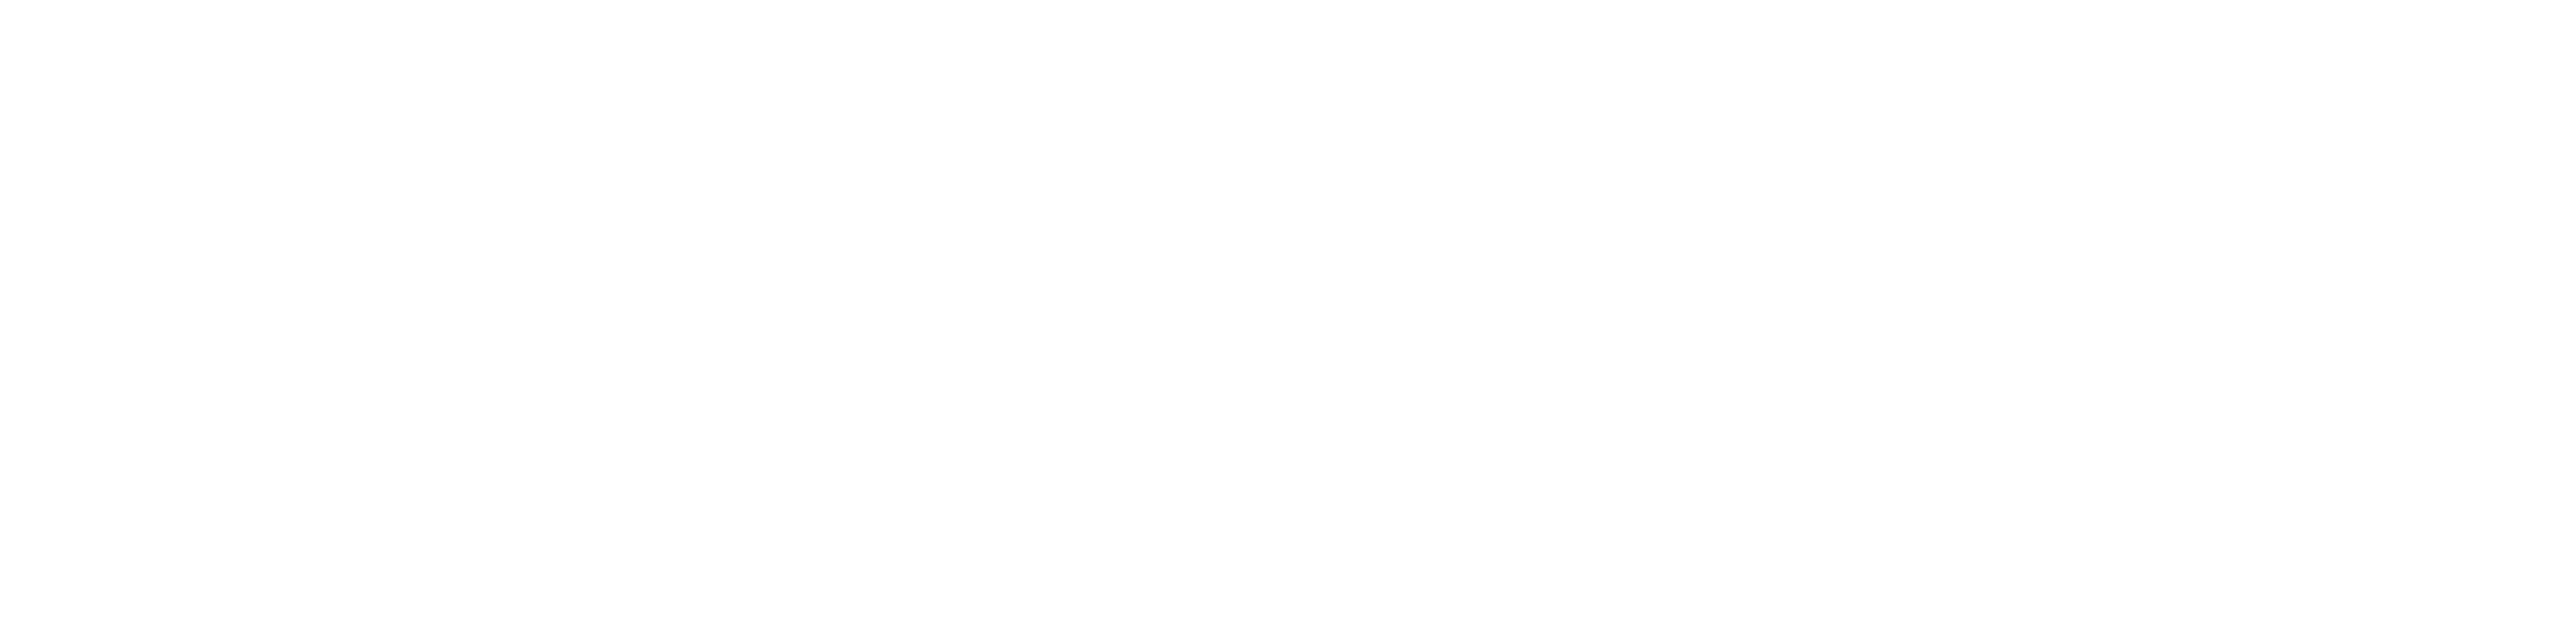 republic-elite-logo-horizontal-white